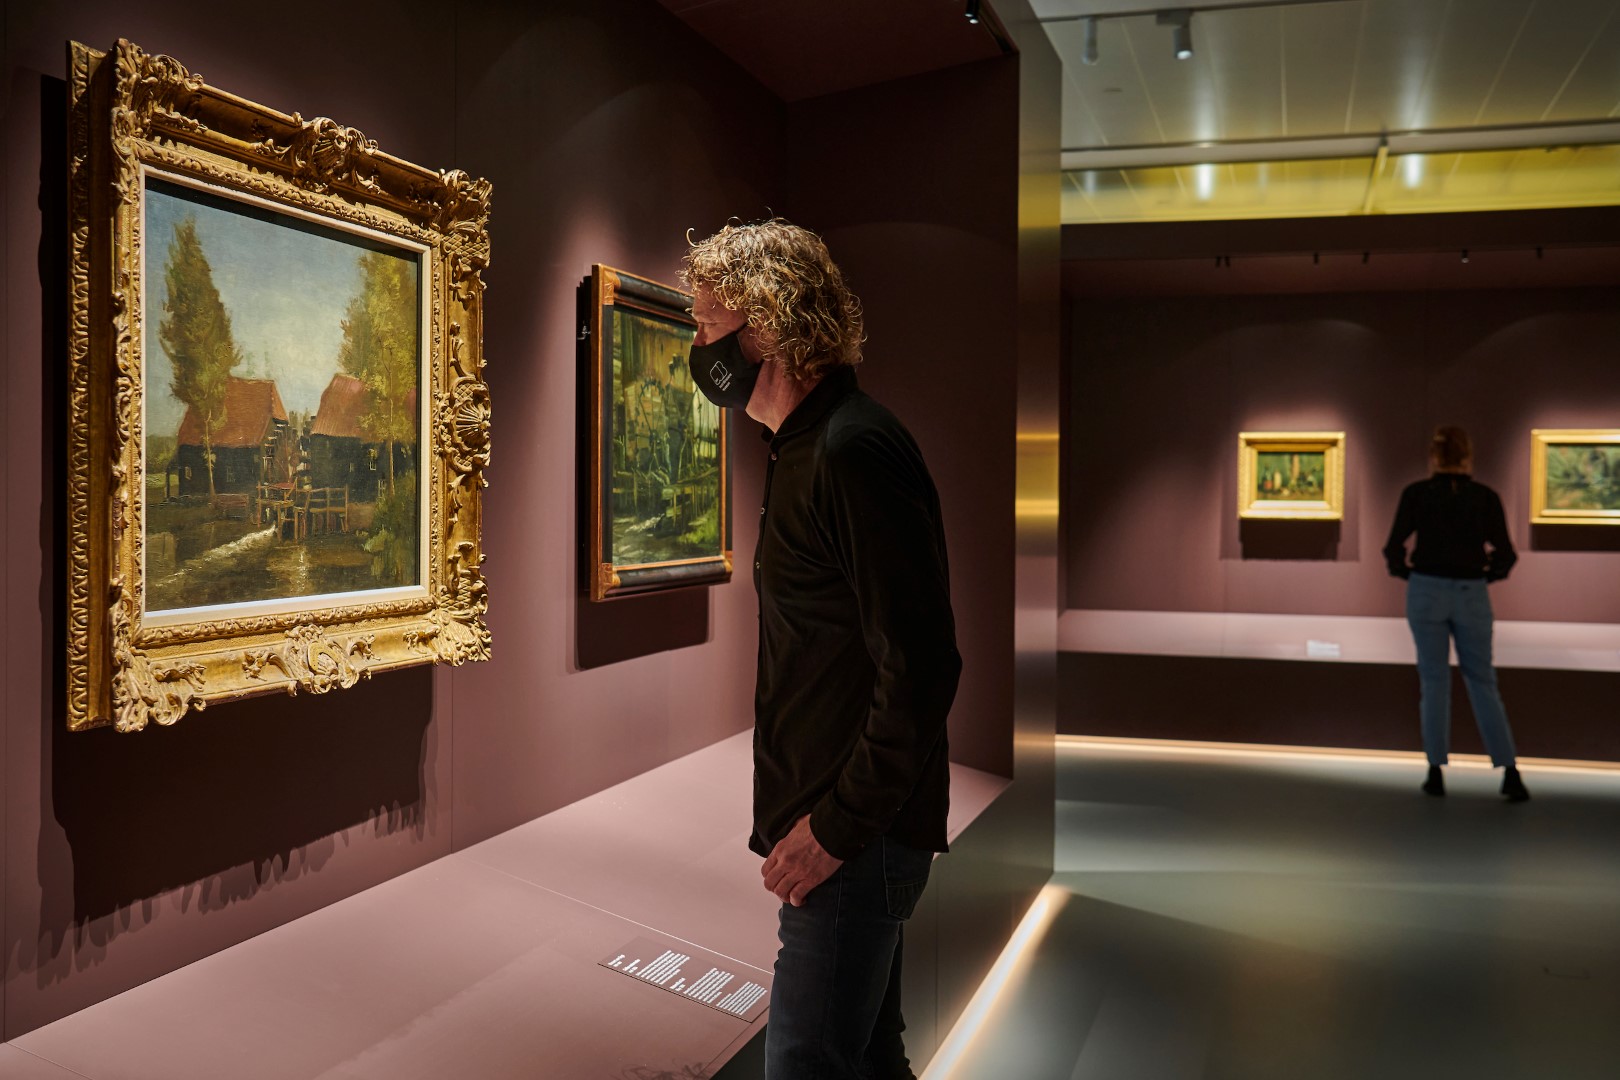 Van Gogh in Brabant. Photo Credit: Jan-Kees Steenman